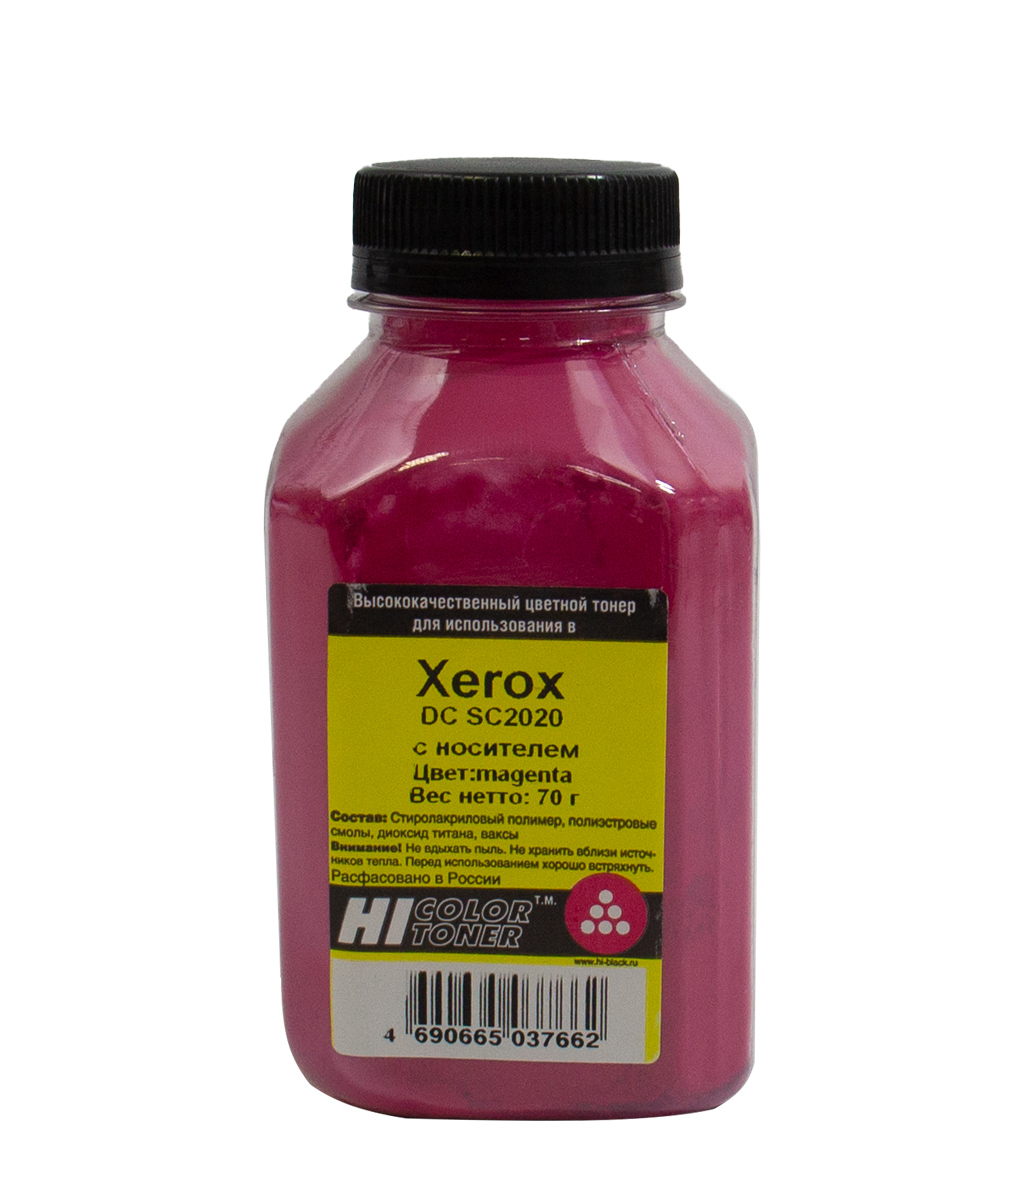 Тонер Hi-Color, бутыль 70 г, пурпурный, совместимый для Xerox DC SC2020, с носителем (20111327)